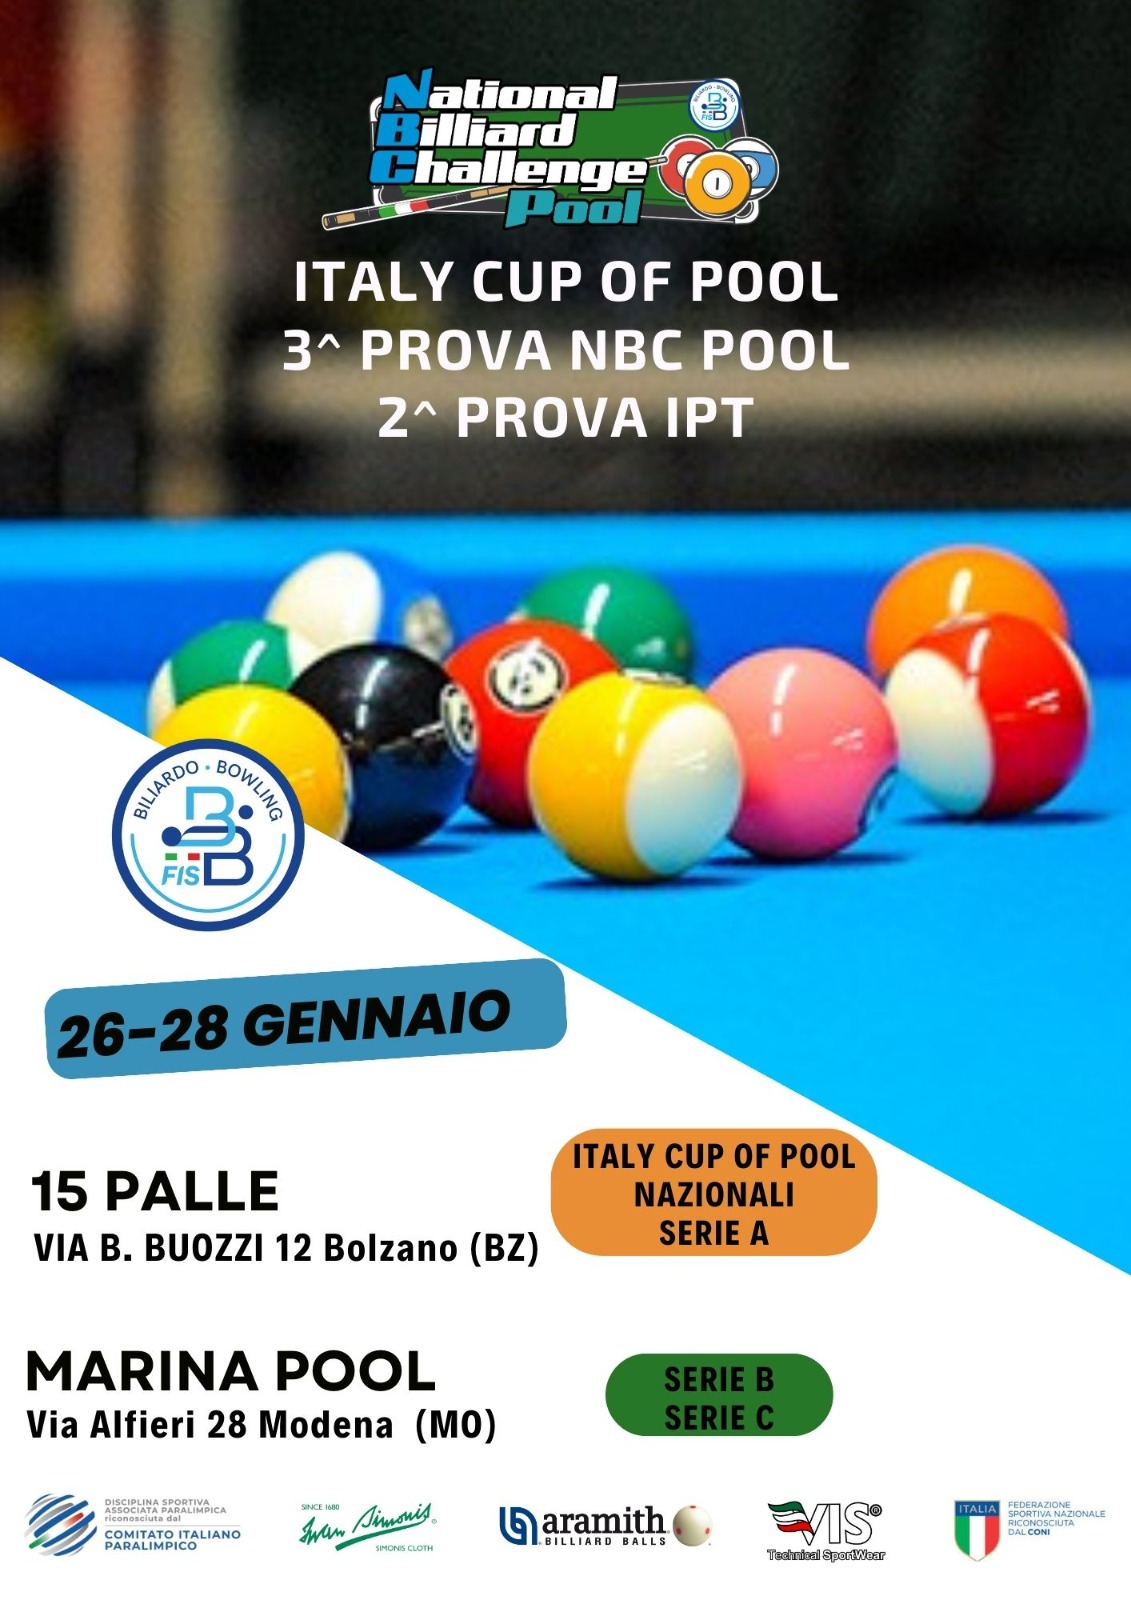 ITALY CUP OF POOL - 3^ PROVA NBC E 2^ PROVA IPT: APERTURA ISCRIZIONI 